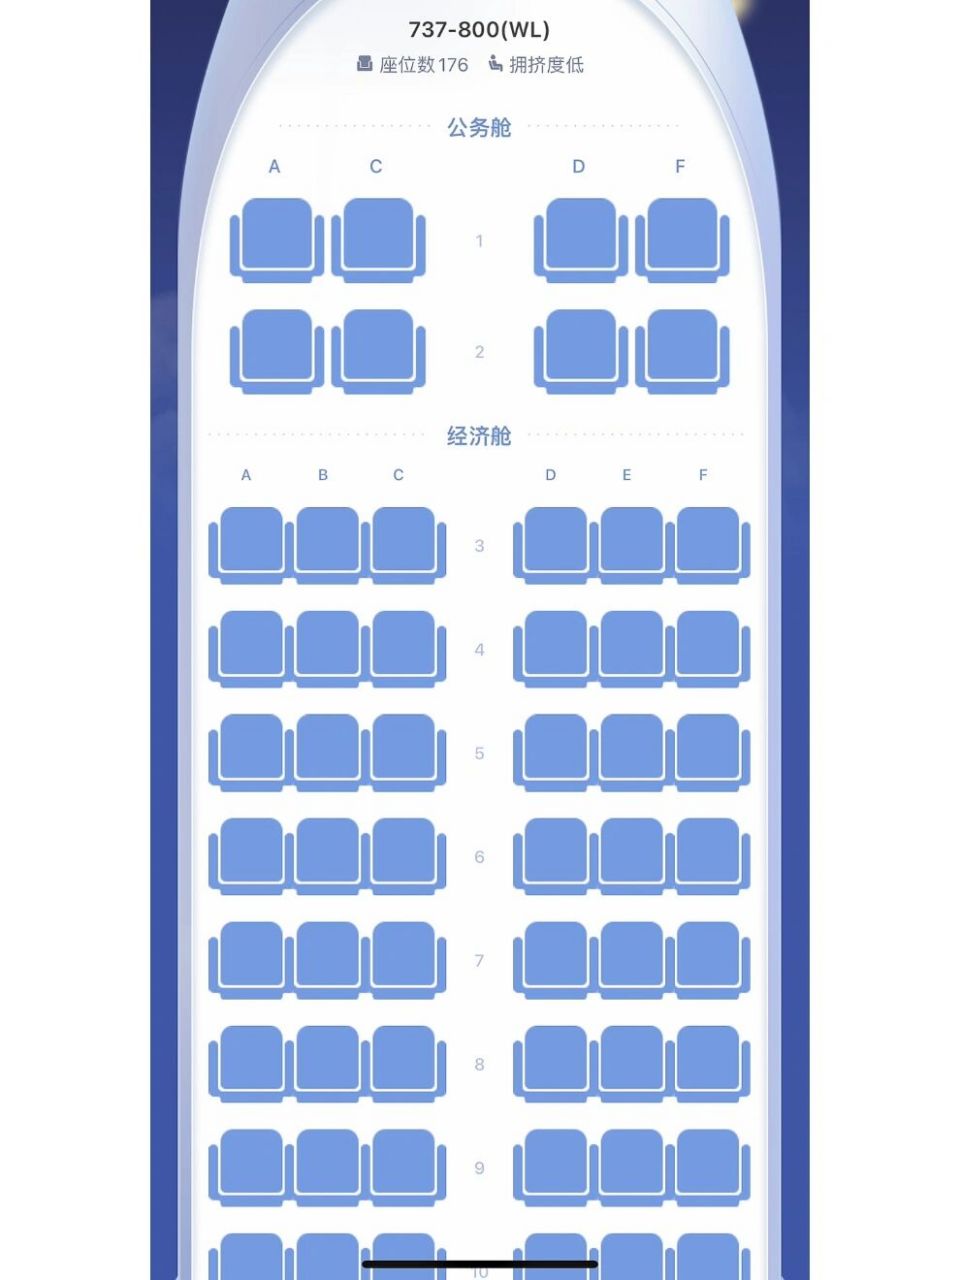 厦门航空波音737座位图图片